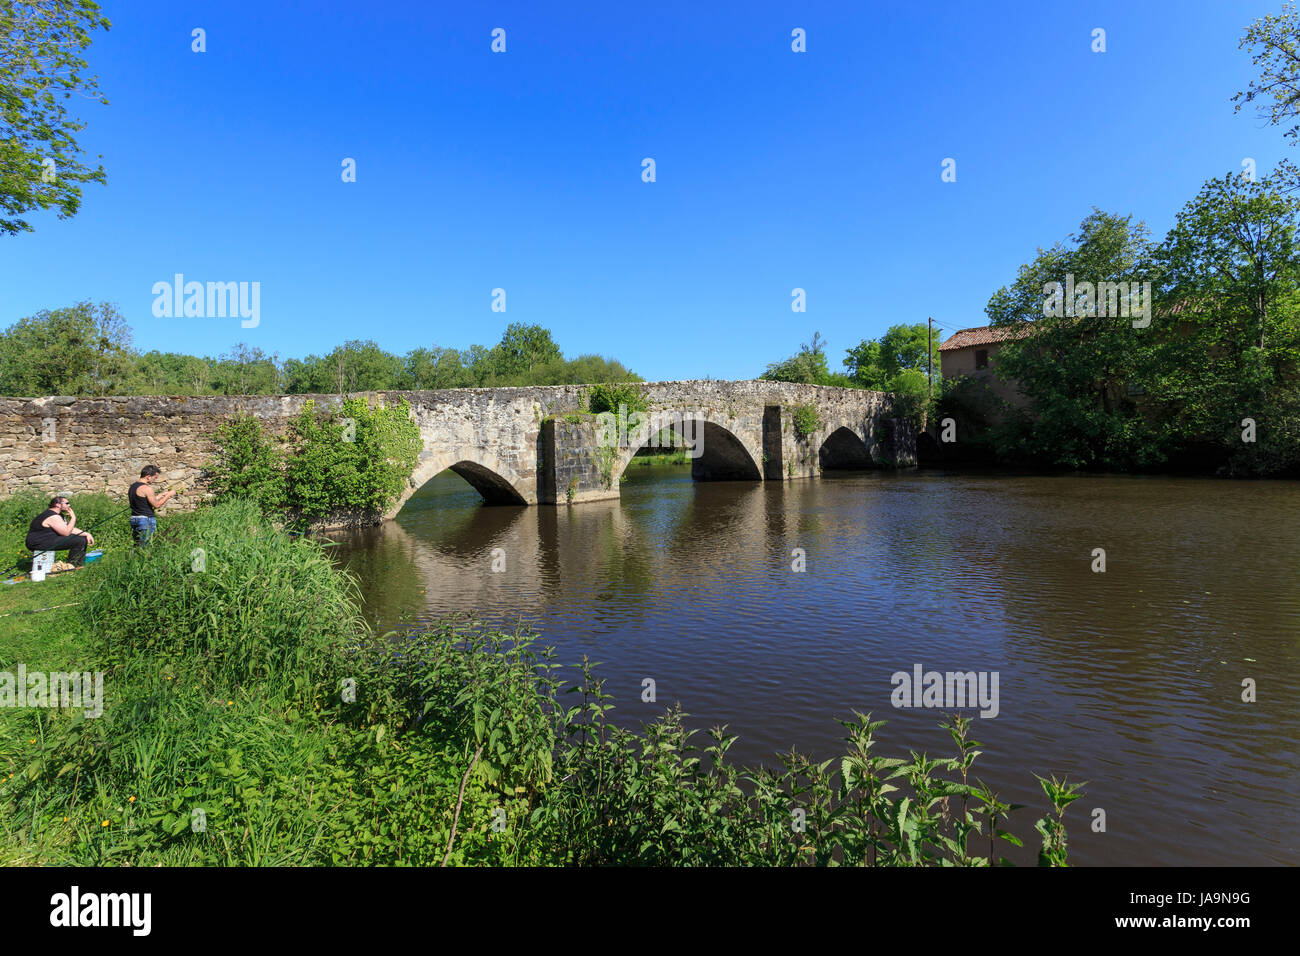 France, Haute Vienne, Saint-Ouen-sur-Gartempe, old bridge and the Gartempe river Stock Photo